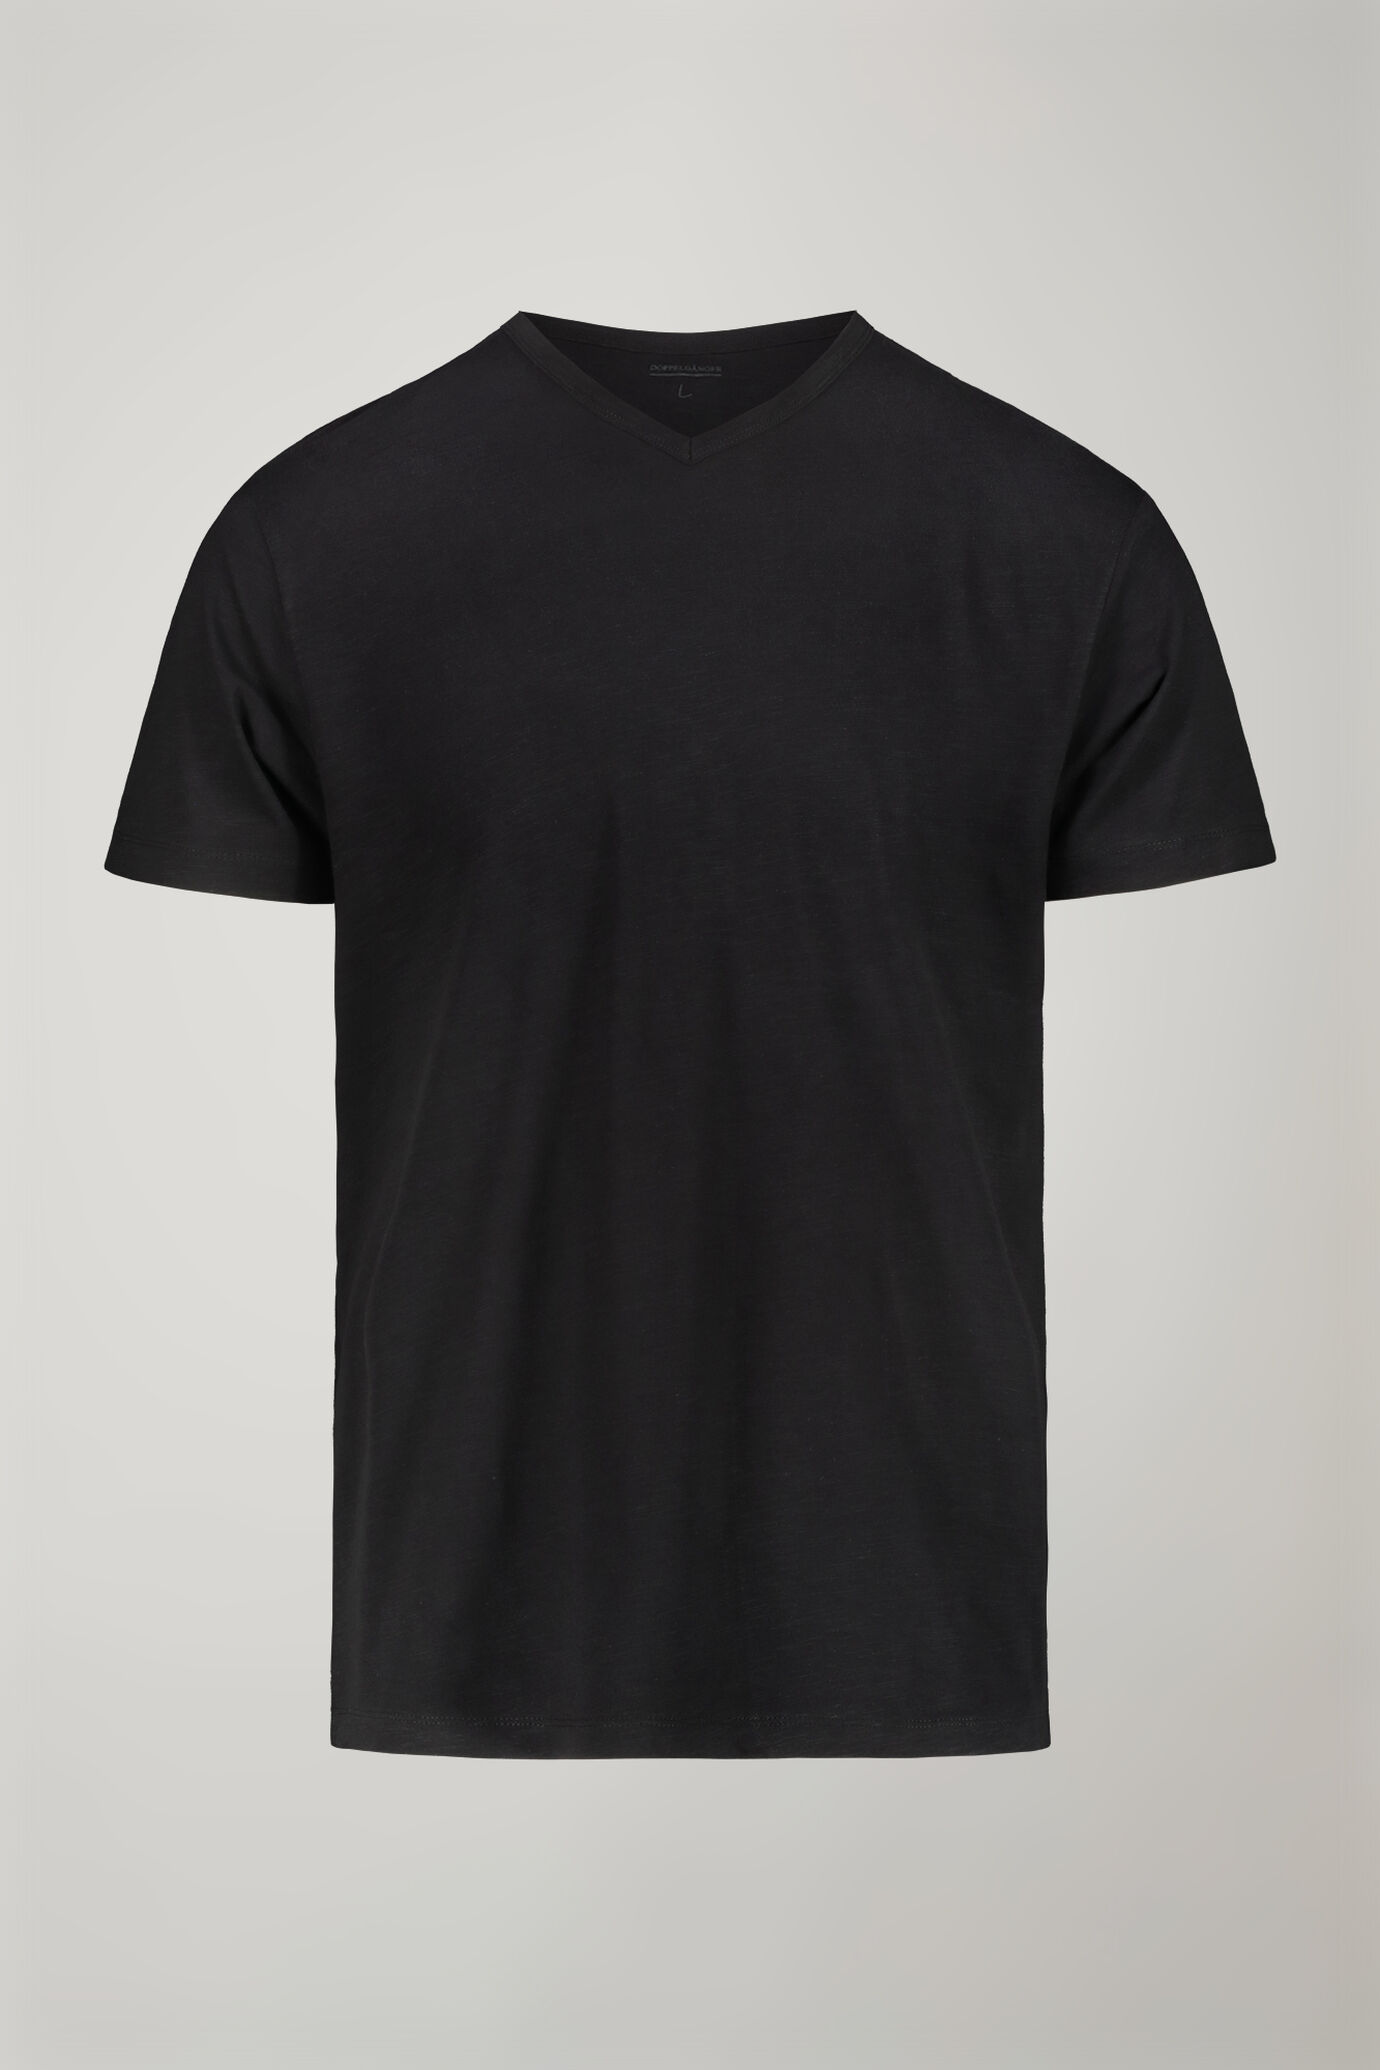 Men’s v-neck t-shirt 100% cotton flamed effect regular fit image number 4